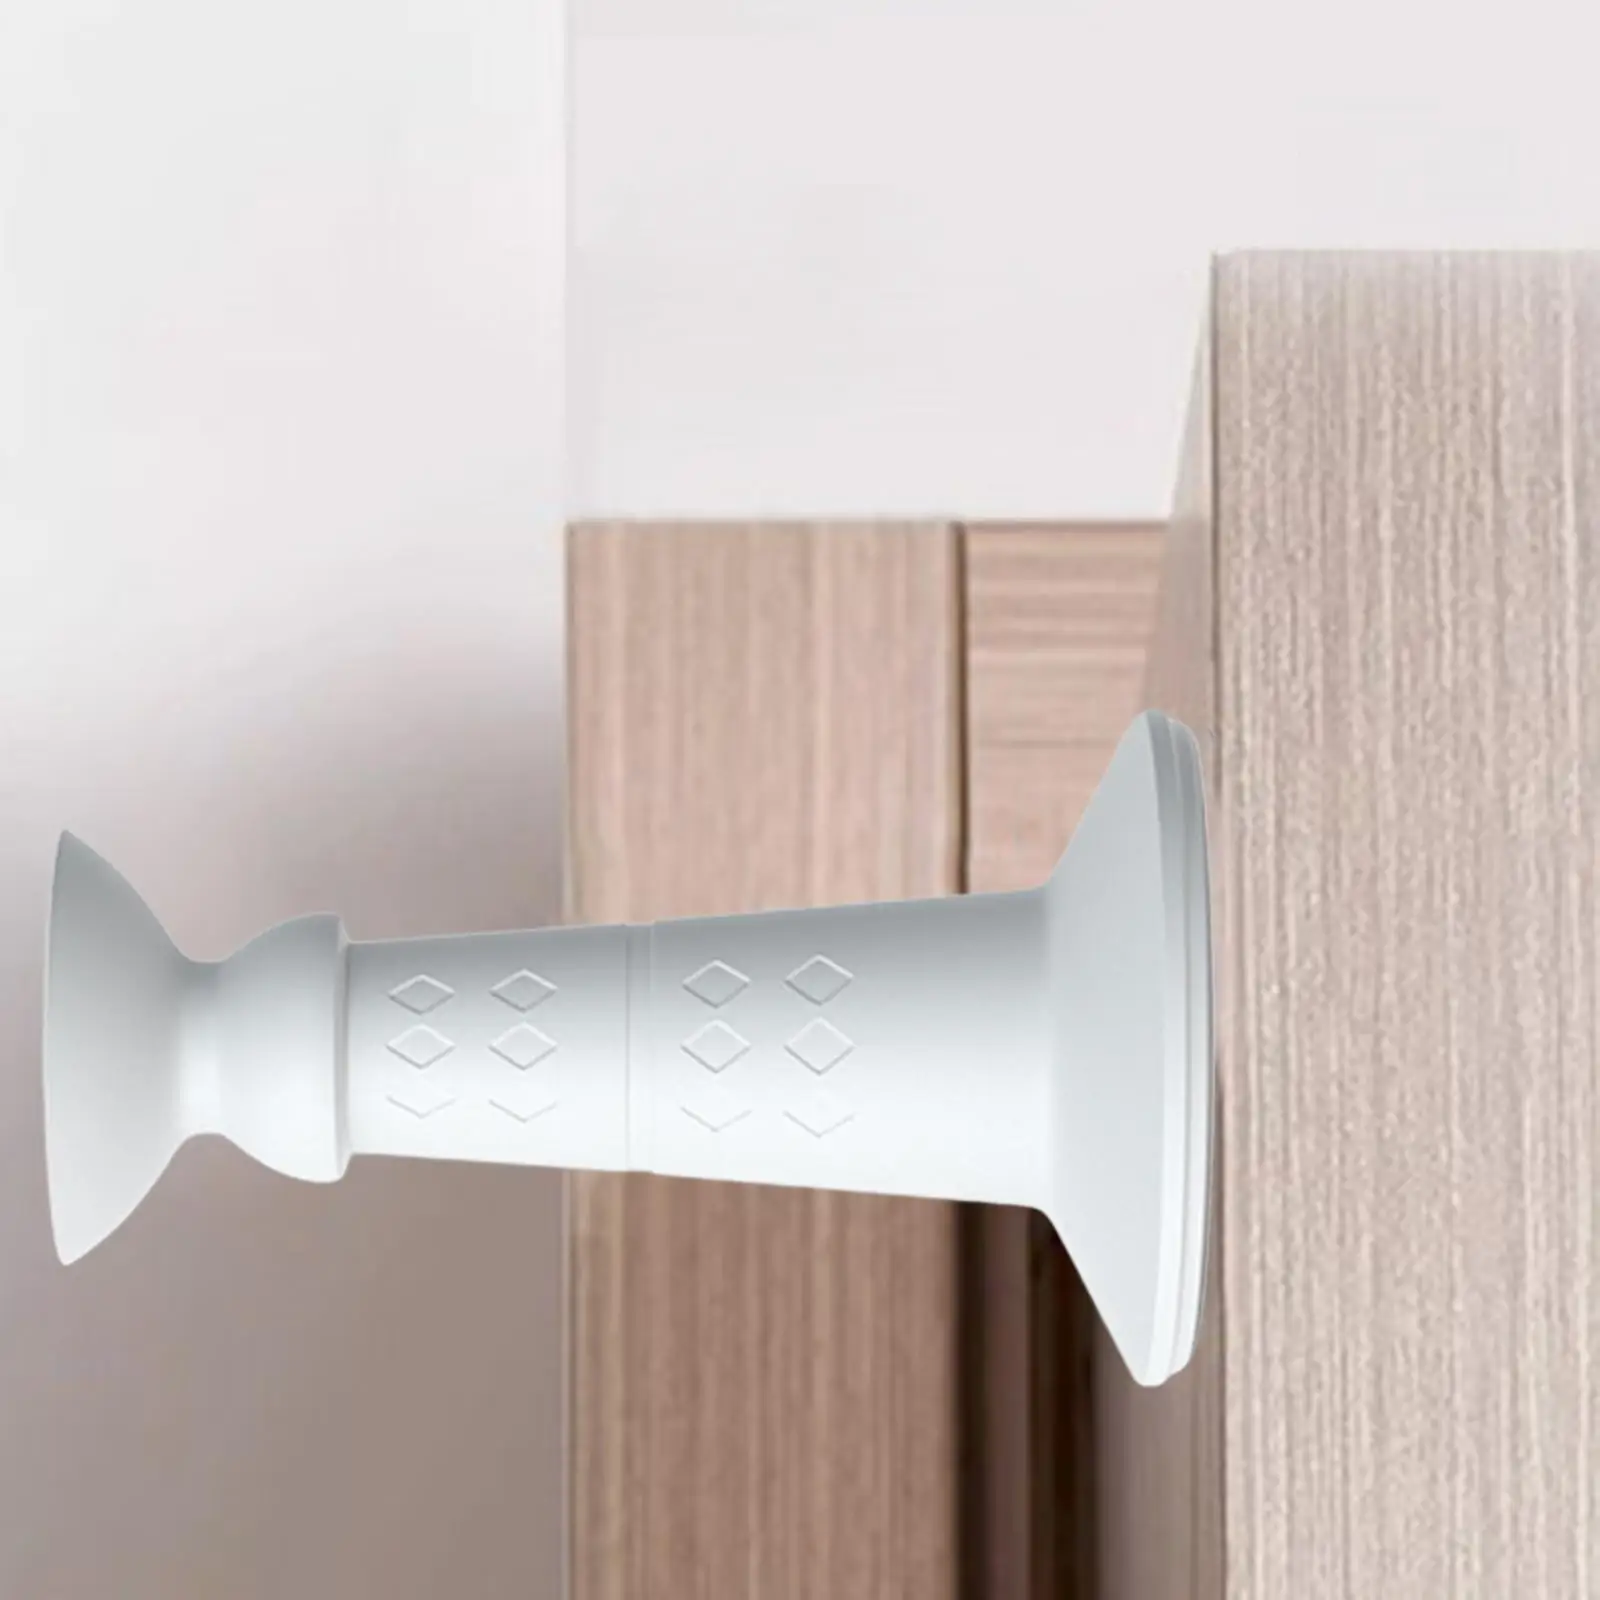 Doorstops Silicone Waterproof Wall or Floor Mount Premium Strong Lightweight Door Holder for Home Office Bedroom Bathroom